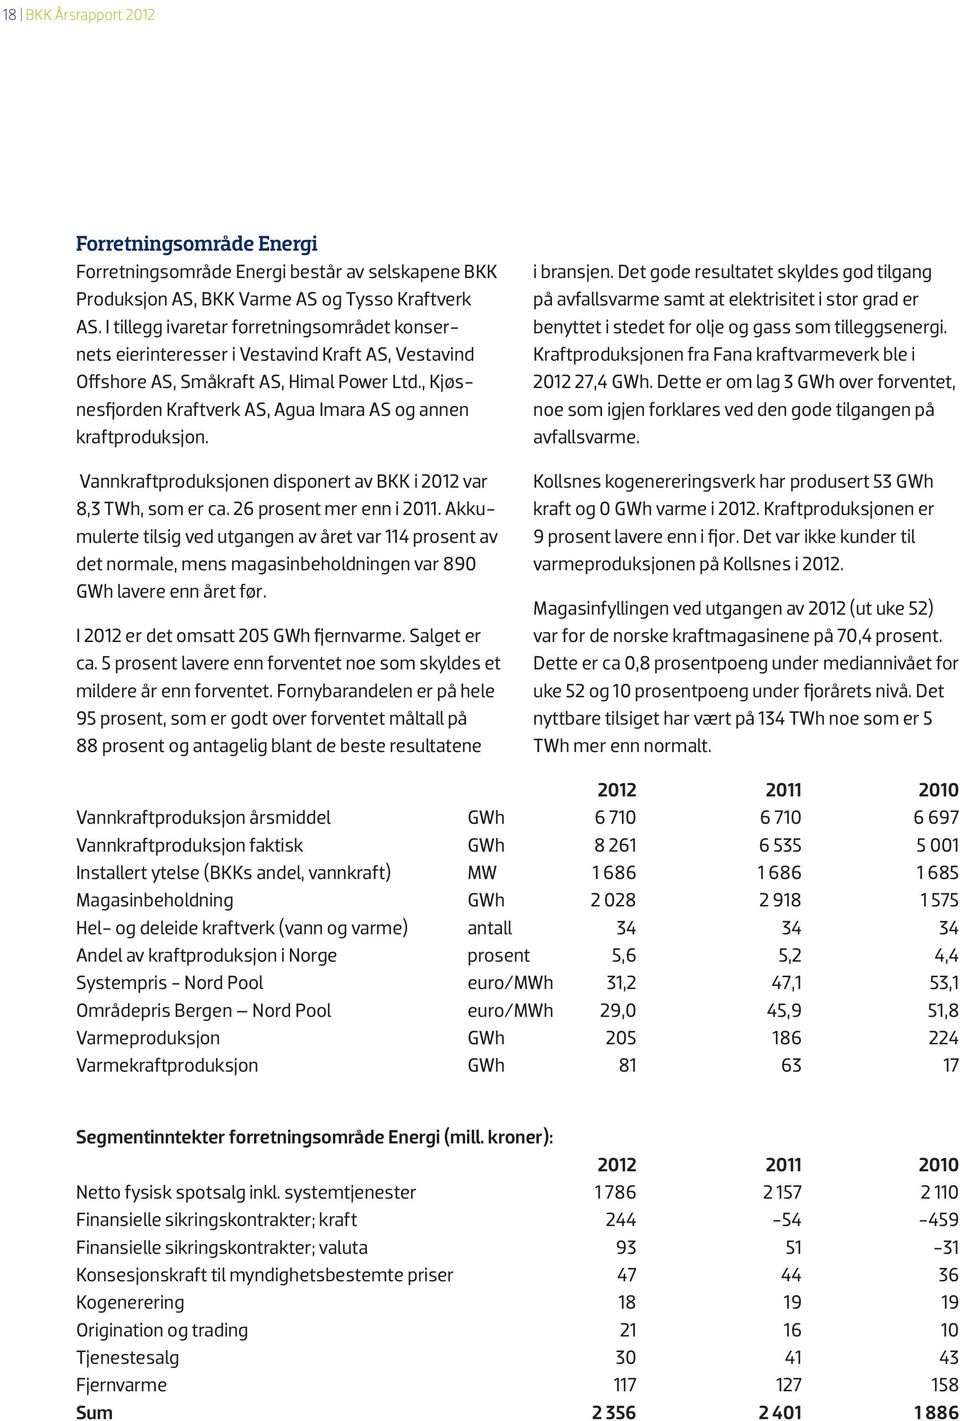 , Kjøsnesfjorden Kraftverk AS, Agua Imara AS og annen kraftproduksjon. Vannkraftproduksjonen disponert av BKK i 2012 var 8,3 TWh, som er ca. 26 prosent mer enn i 2011.